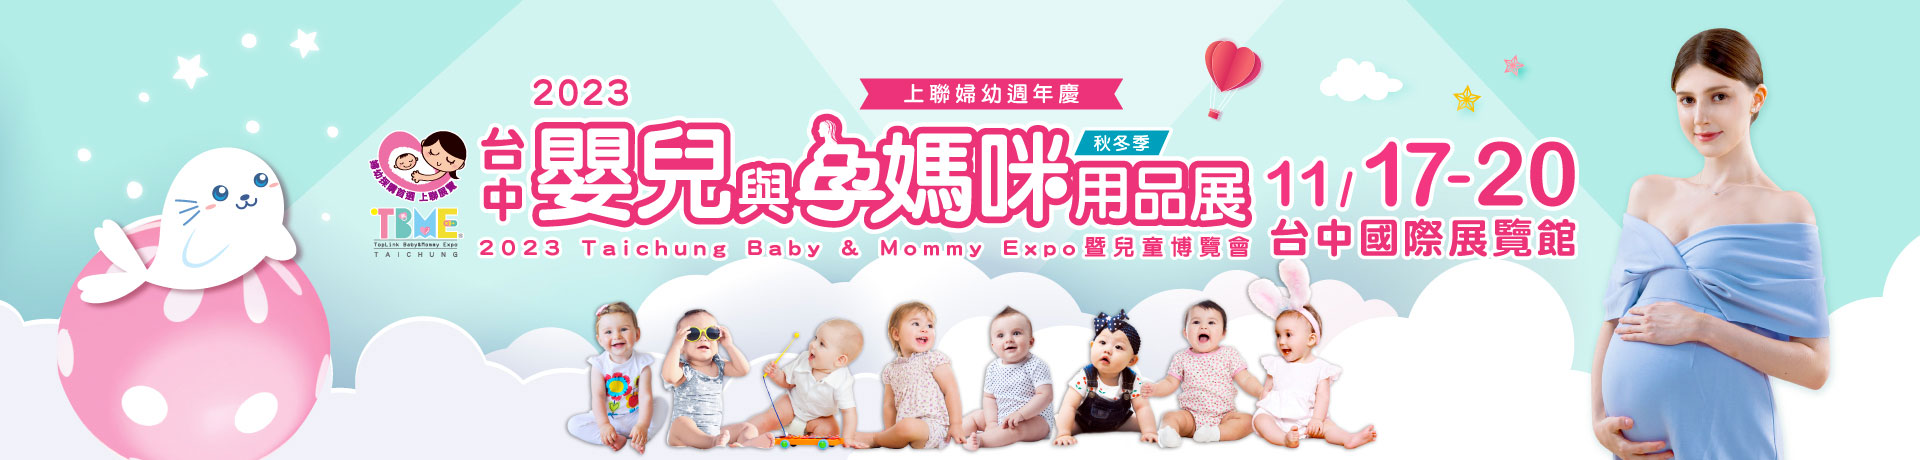 2023台中嬰兒與孕媽咪用品展暨兒童博覽會(秋冬季)